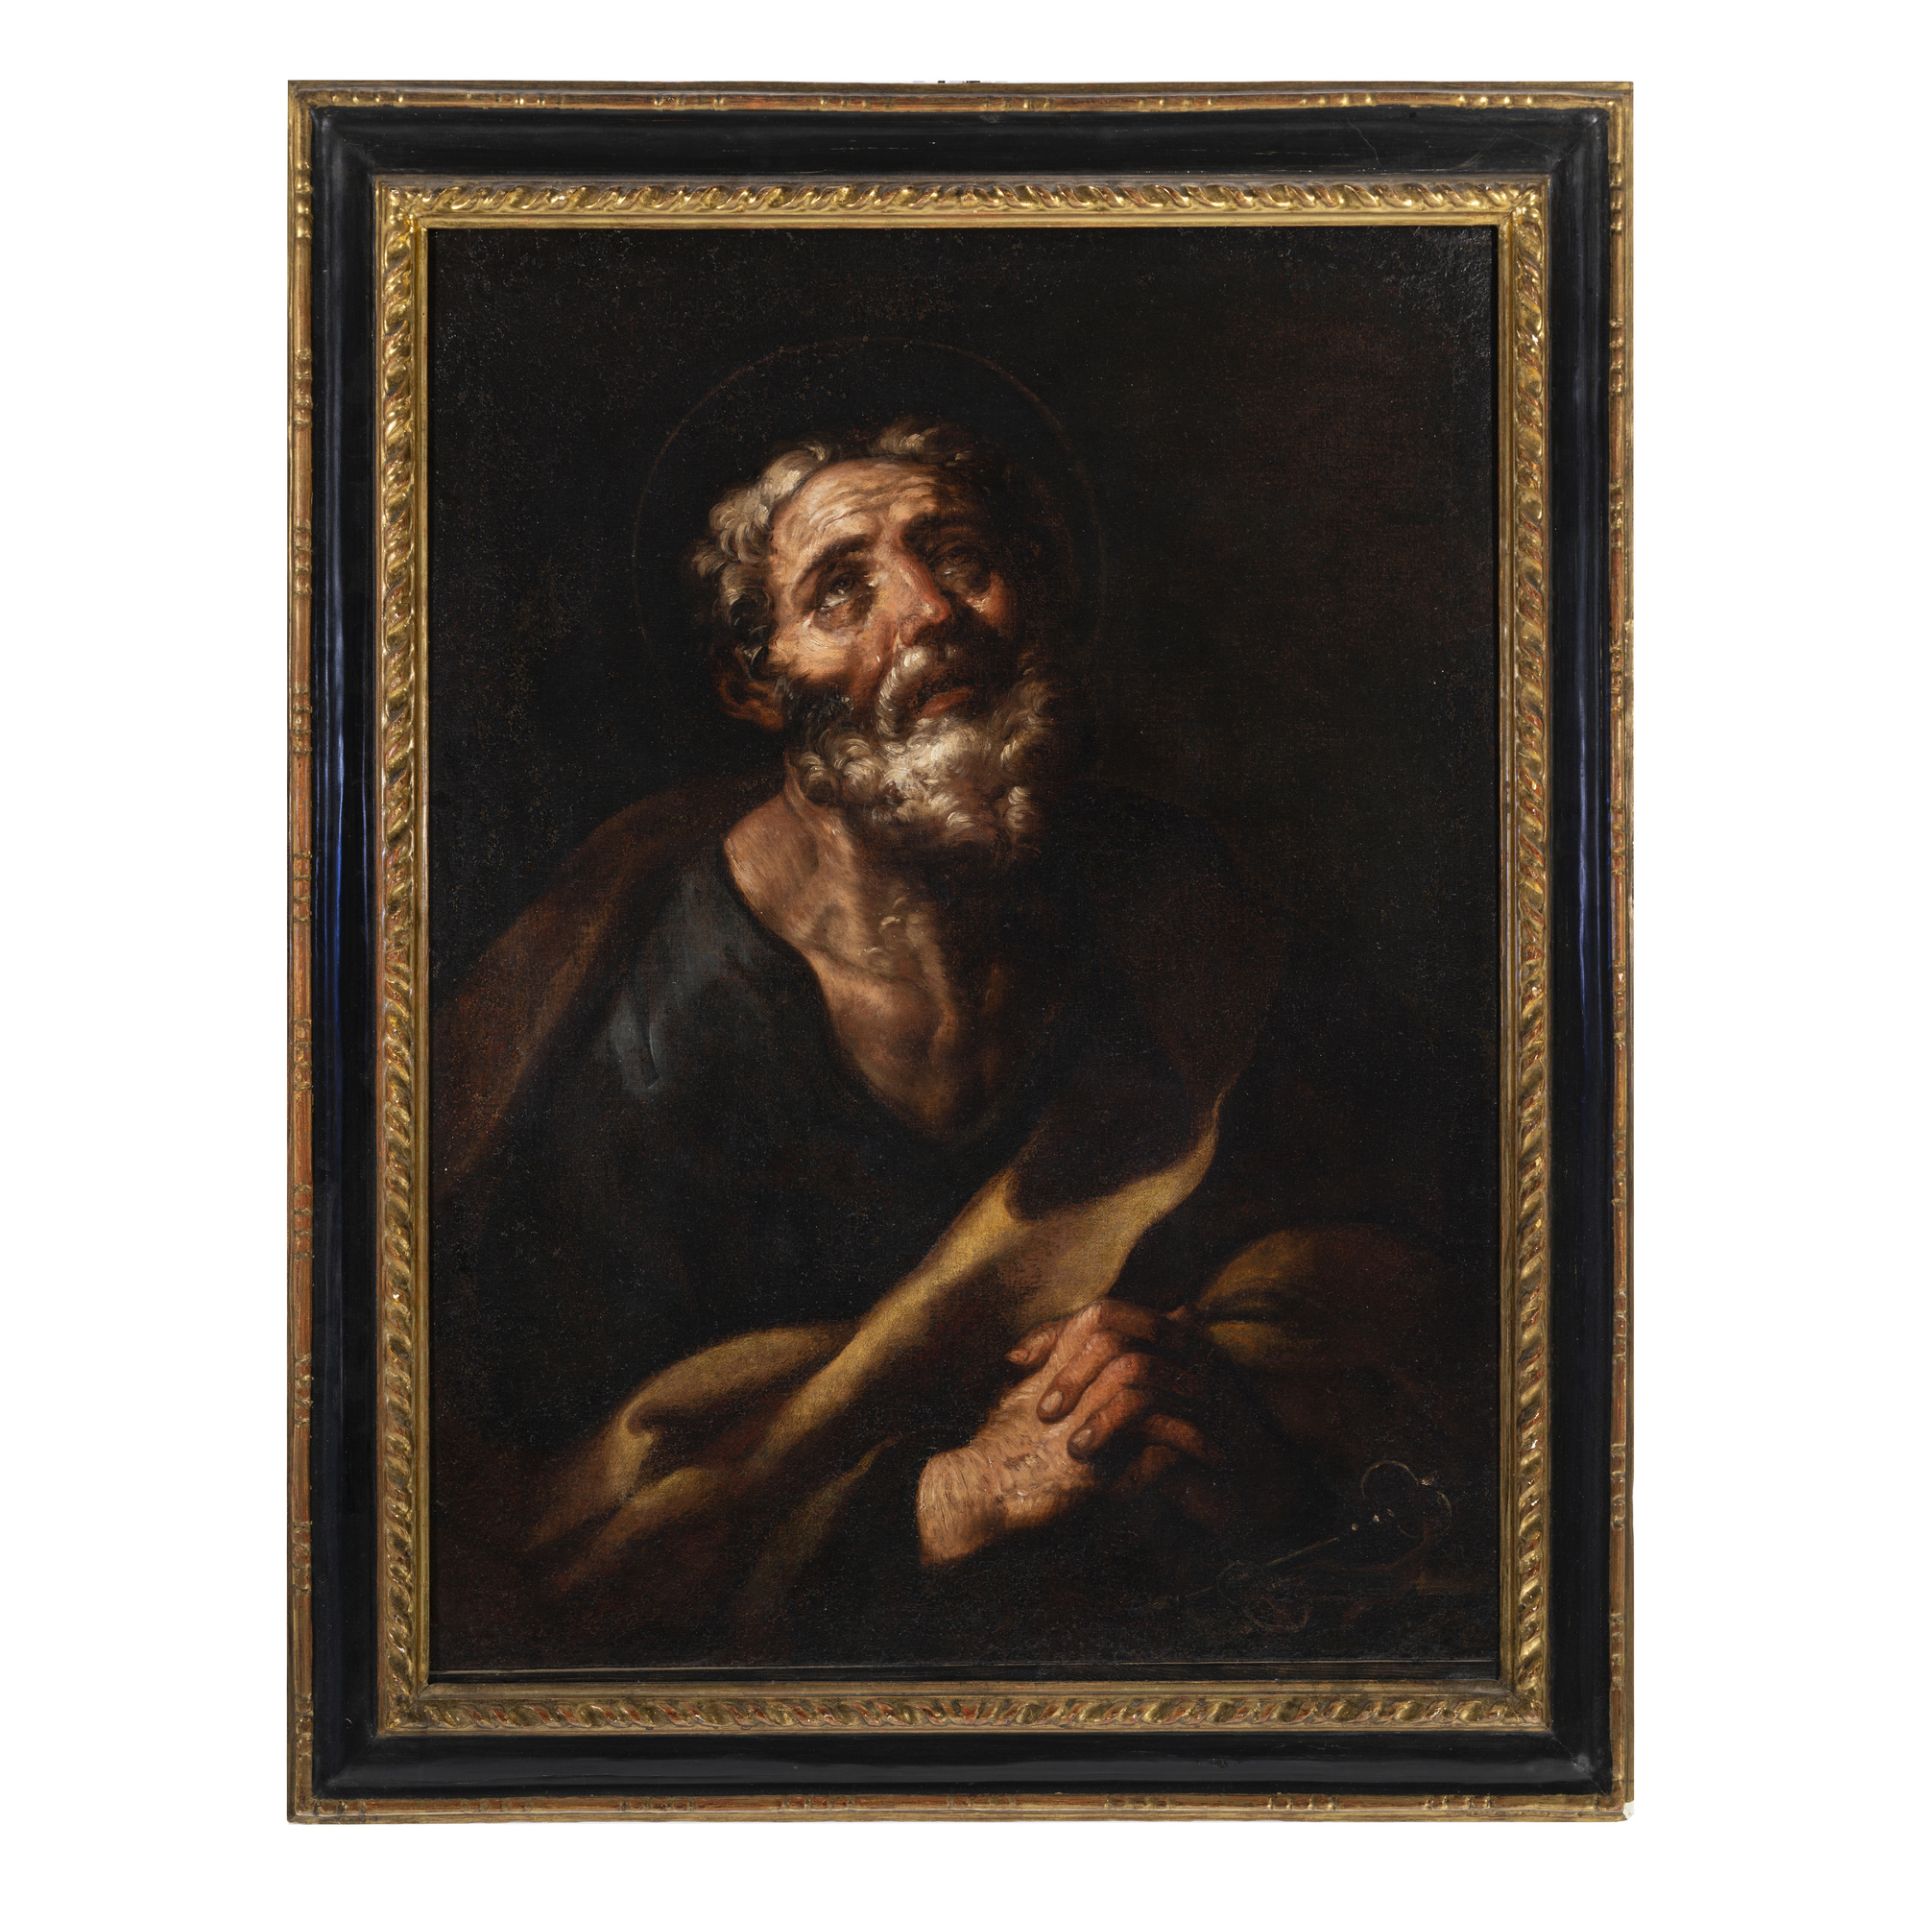 Cesare Fracanzano (Bisceglie 1605 - Barletta 1651/1652)